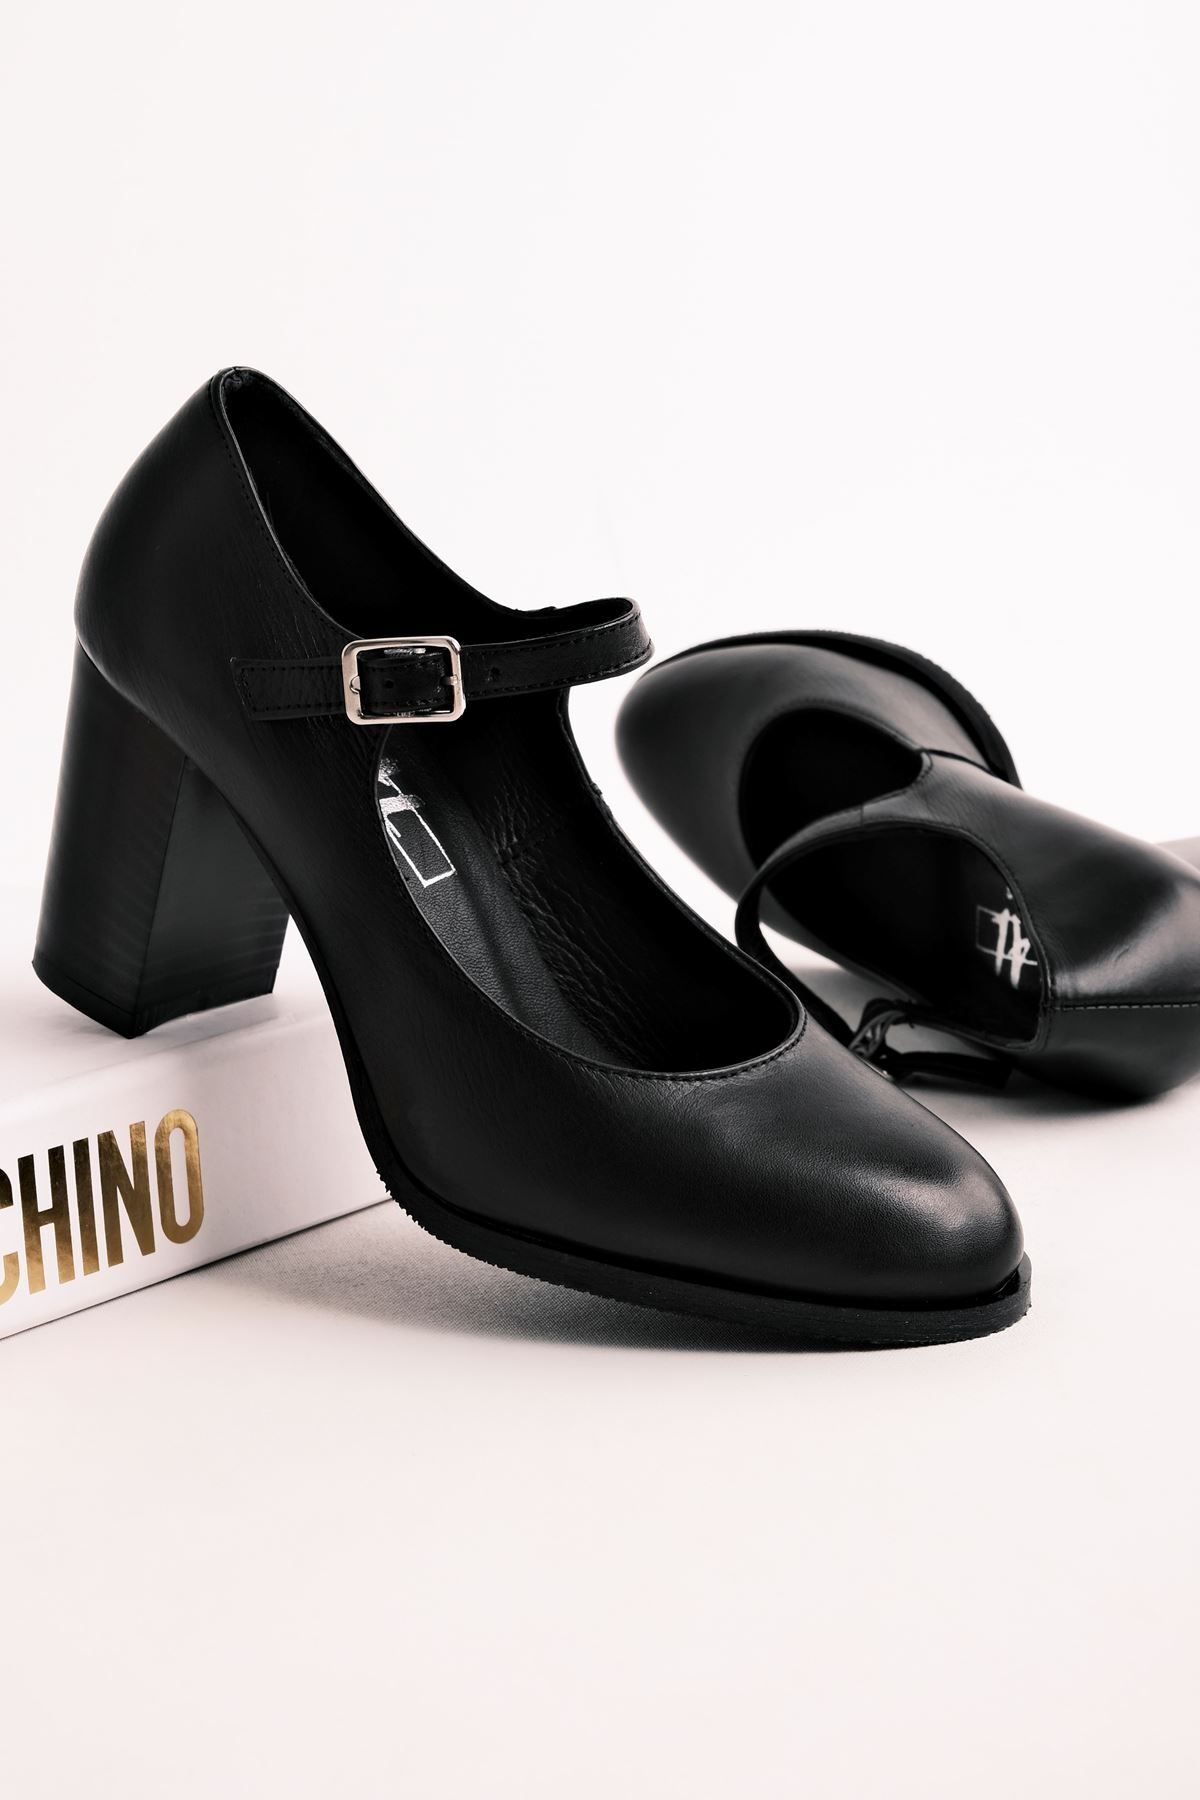 LAL SHOES & BAGS Sharon Kadın Hakiki Deri Topuklu Ayakkabı Tokalı Bantlı-siyah